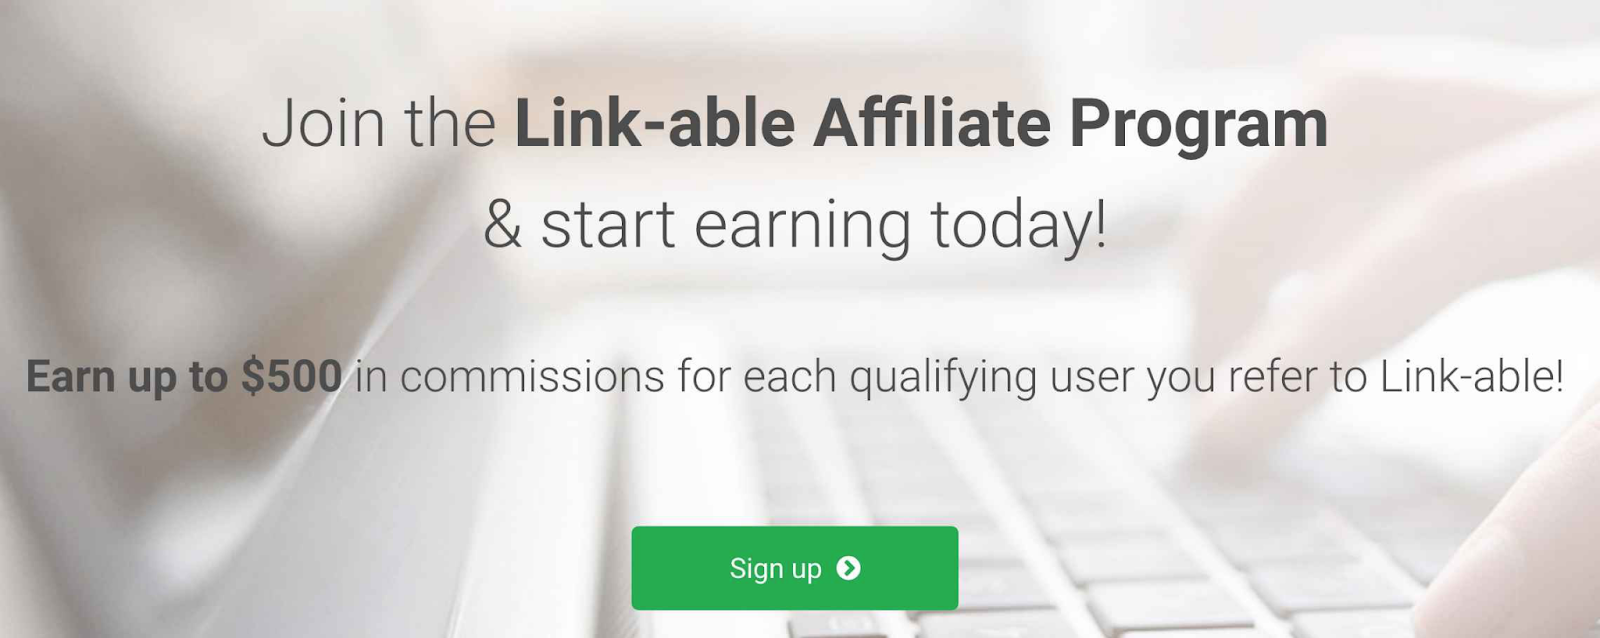 Link-able Affiliate Program header